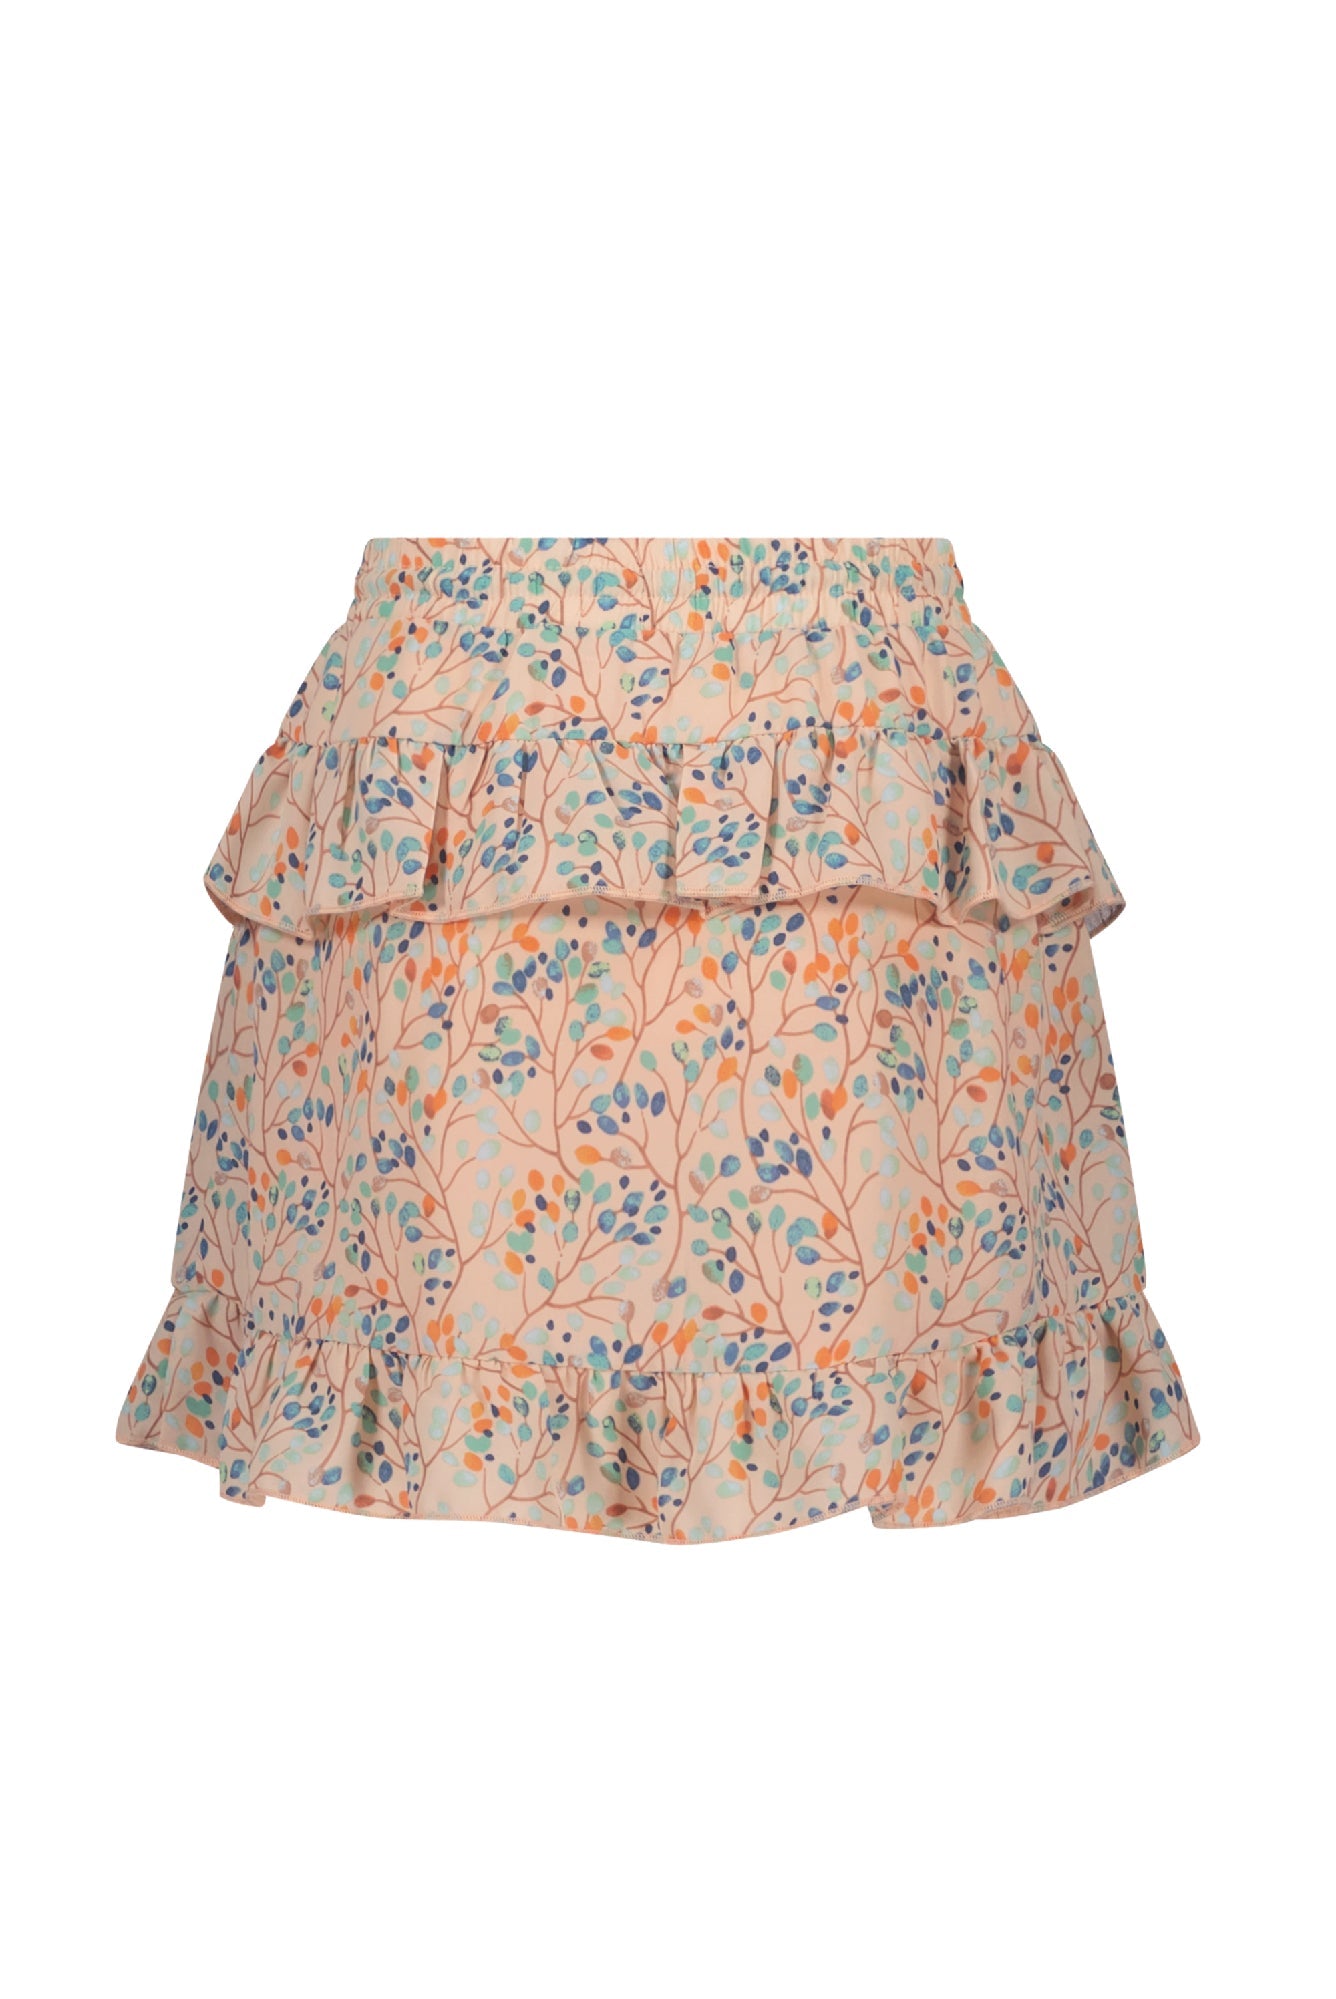 Meisjes Neva short skirt with pants lining van NoNo in de kleur Rosy Sand in maat 134-140.